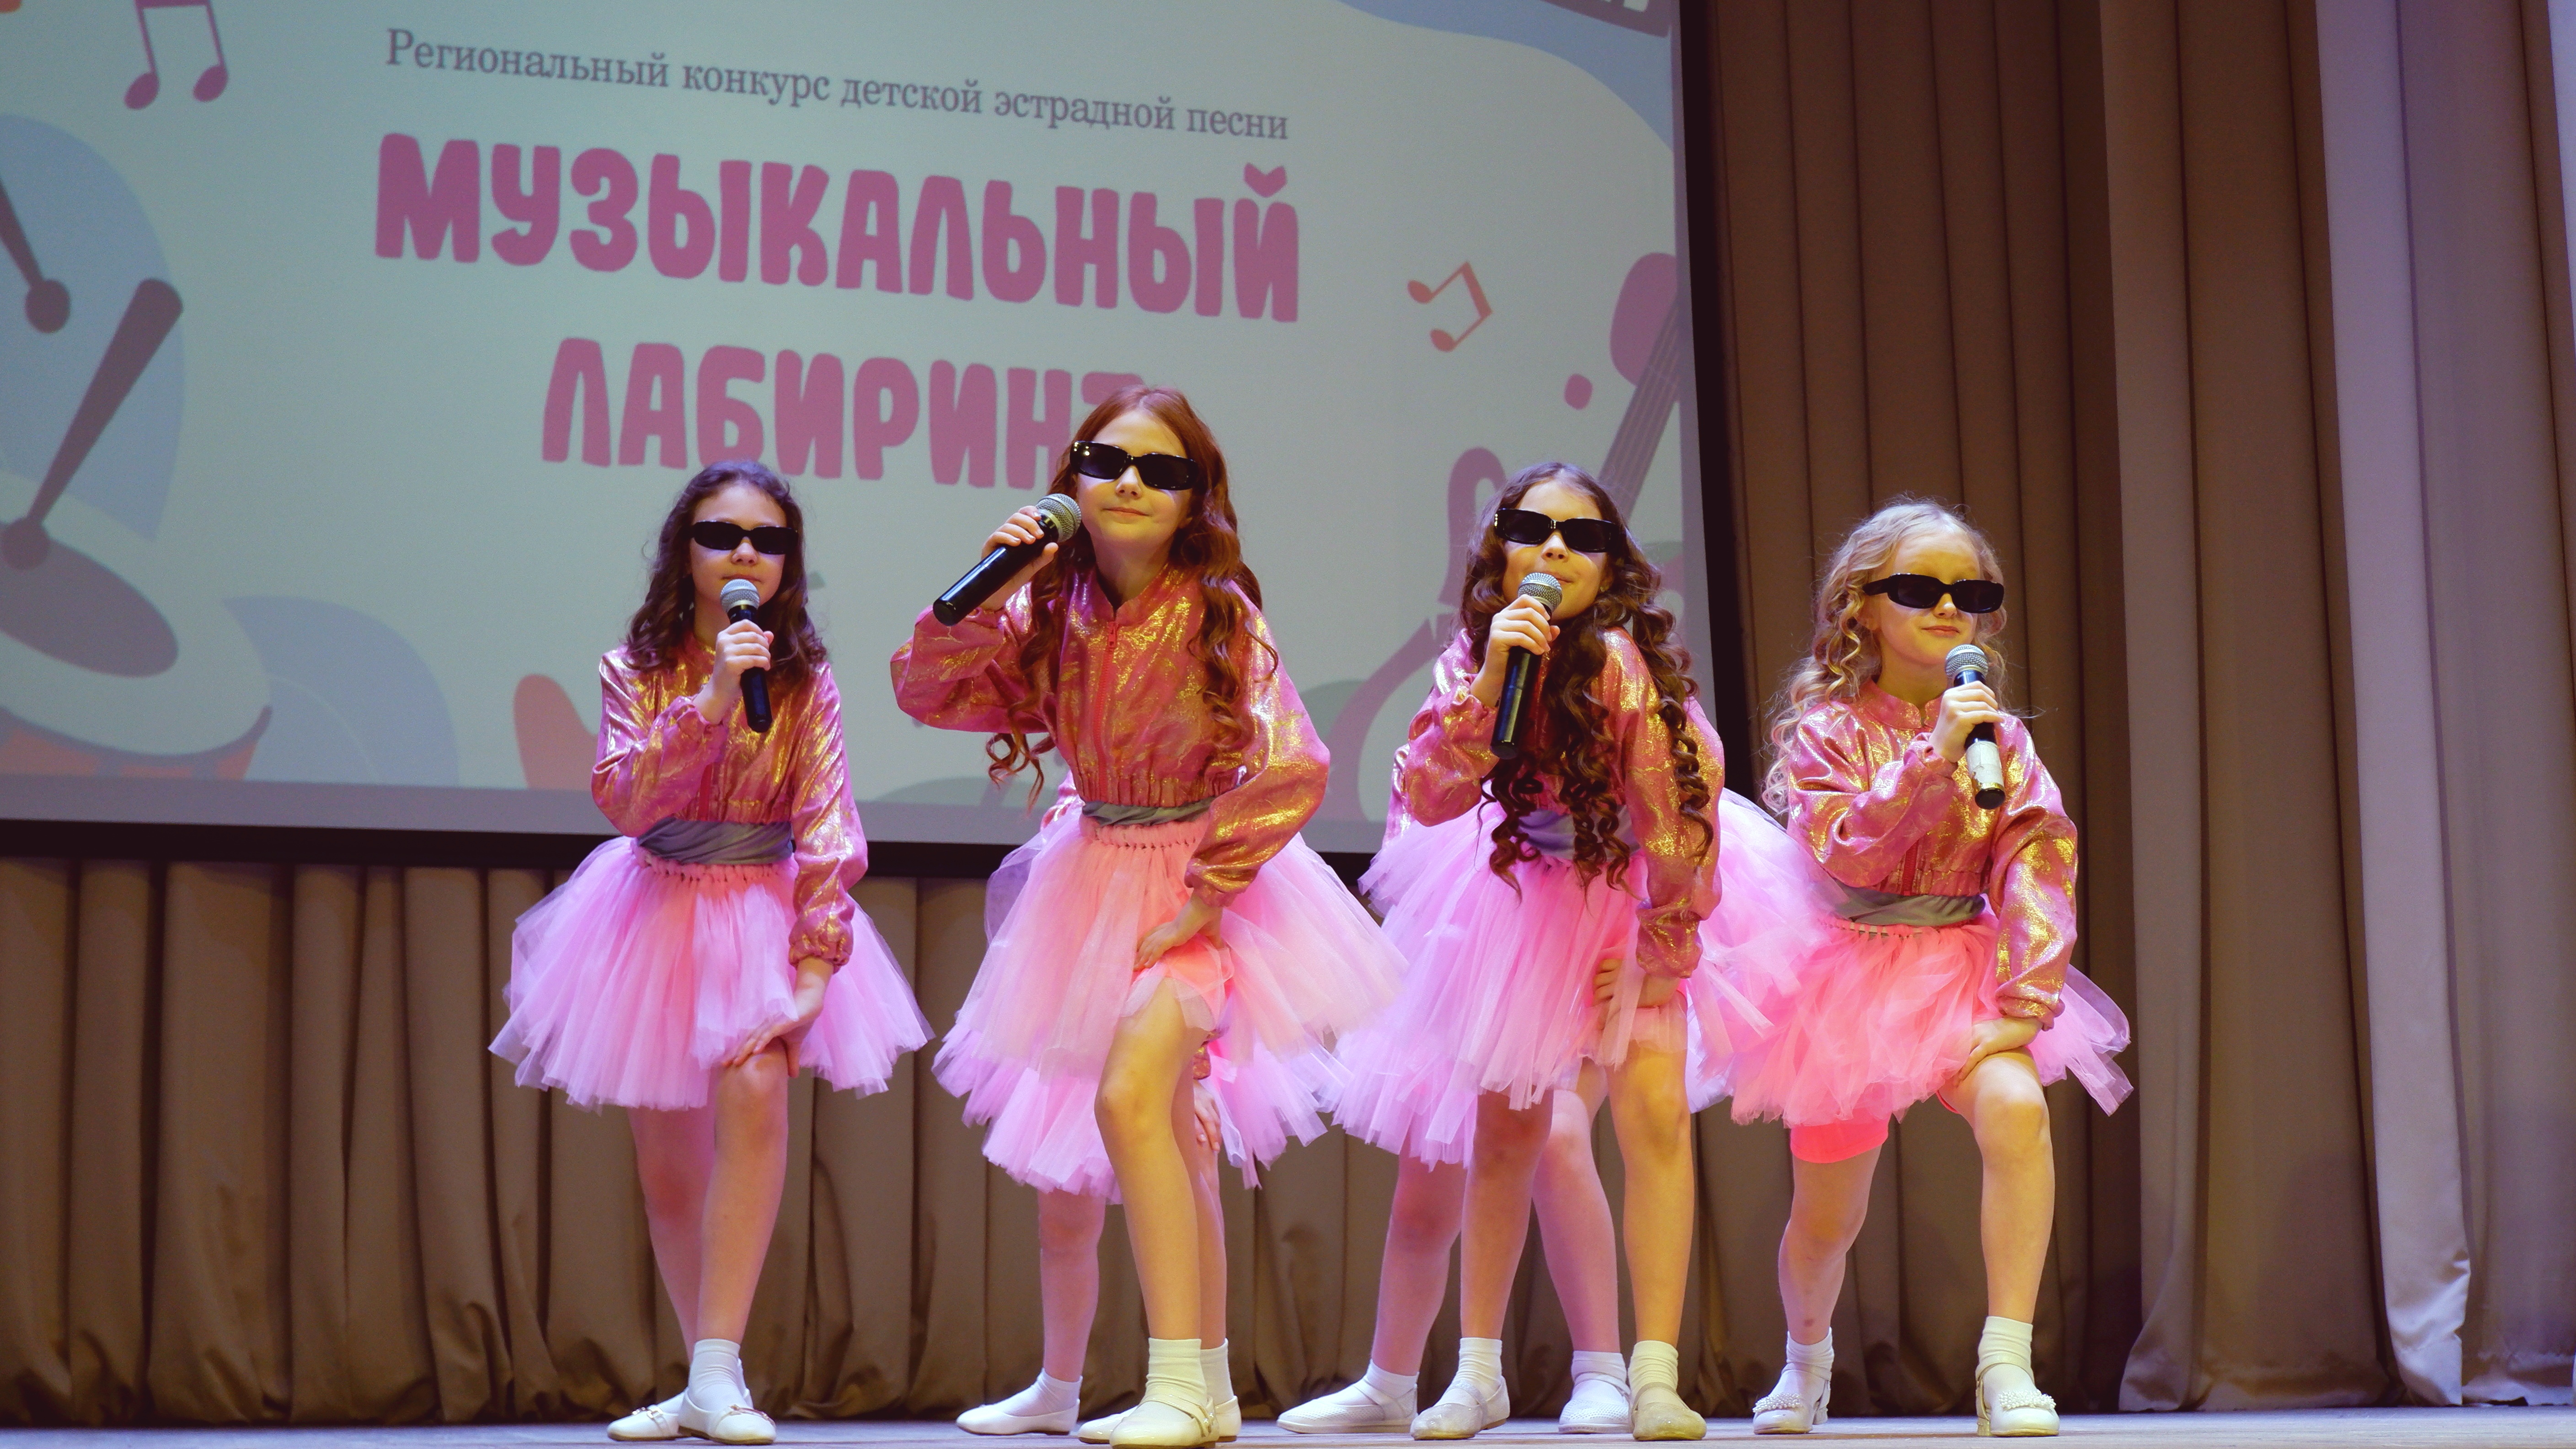 В Кузбассе стартовал региональный конкурс детской эстрадной песни